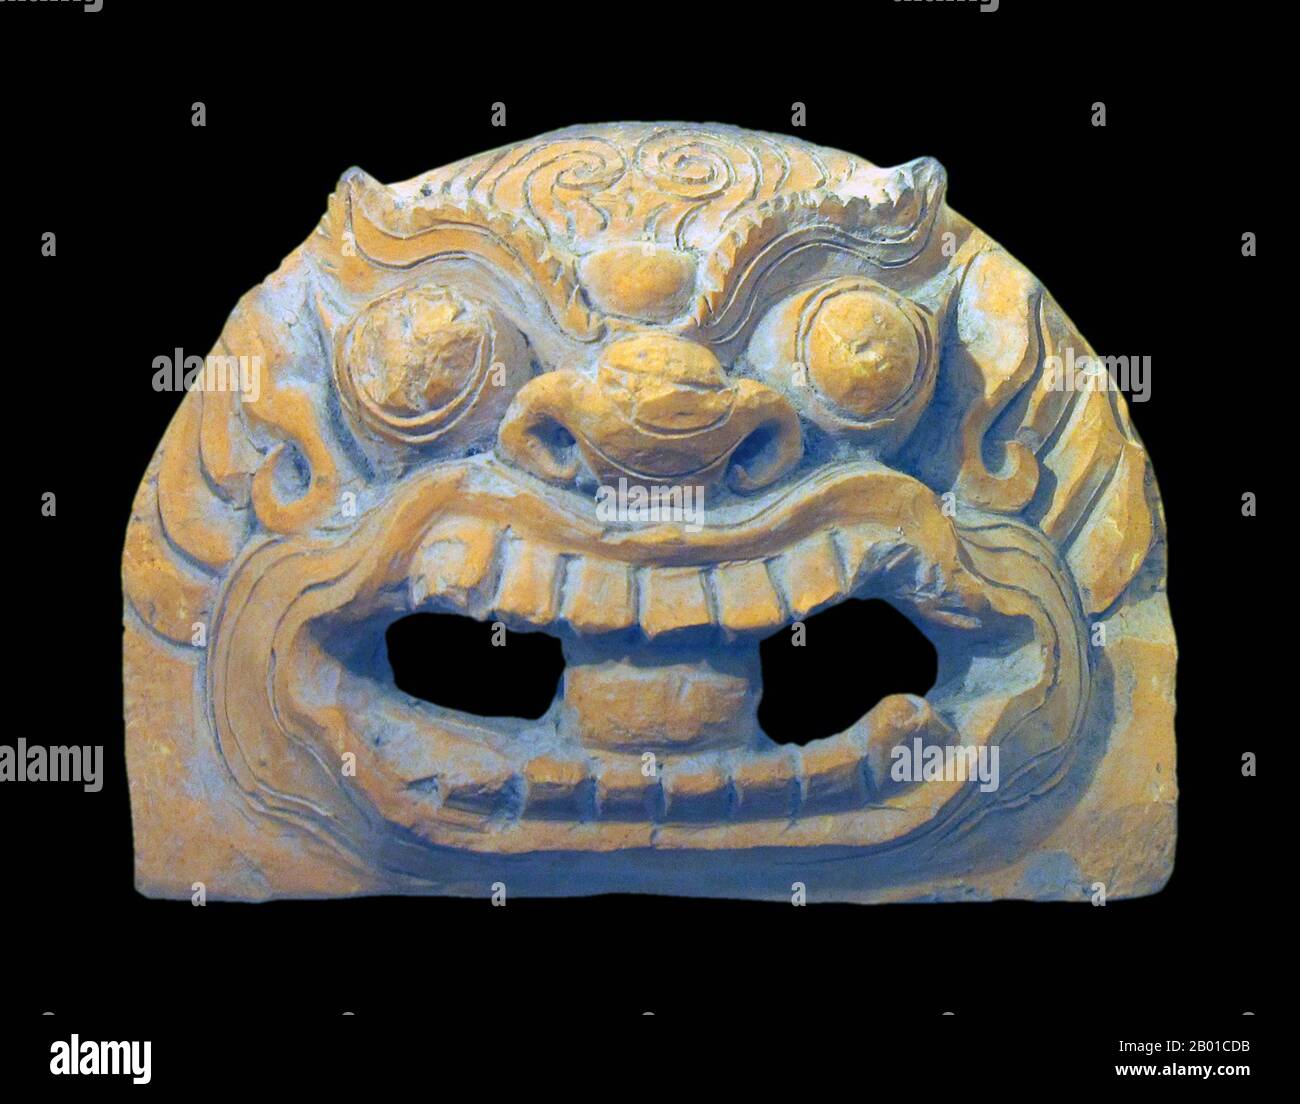 Vietnam: Une tête de tigre, terre cuite, 13th-14th siècle ce. Musée national d'histoire vietnamienne, Hanoï. Photo par Gryffindor - Jbarta (Licence CC BY-sa 3,0). Banque D'Images